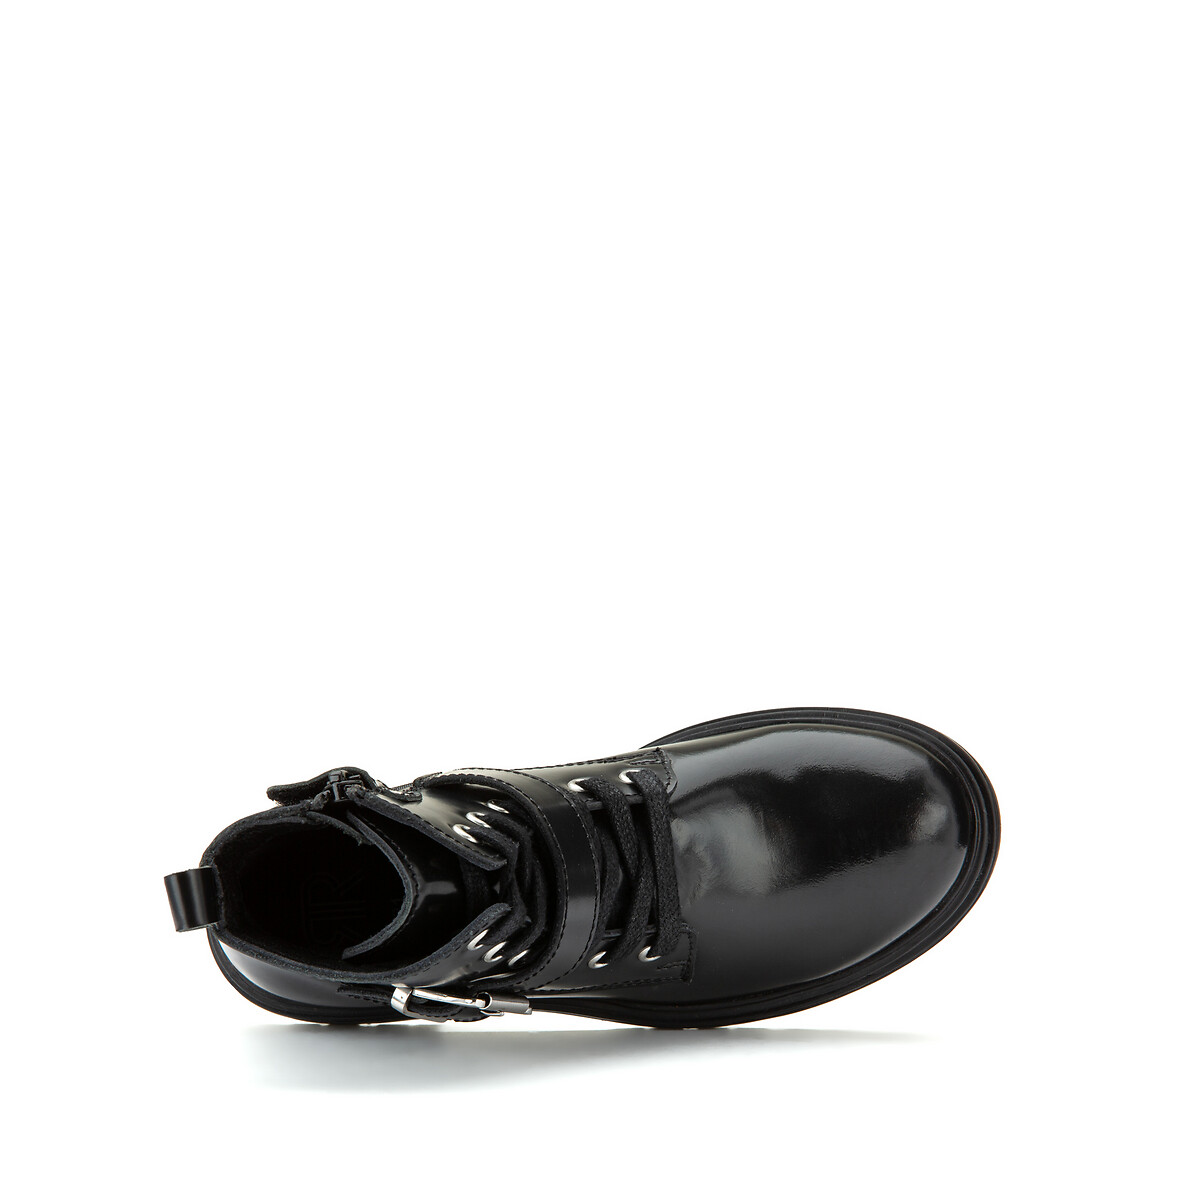 Ботинки LaRedoute Из кожи 28-38 29 черный, размер 29 - фото 4